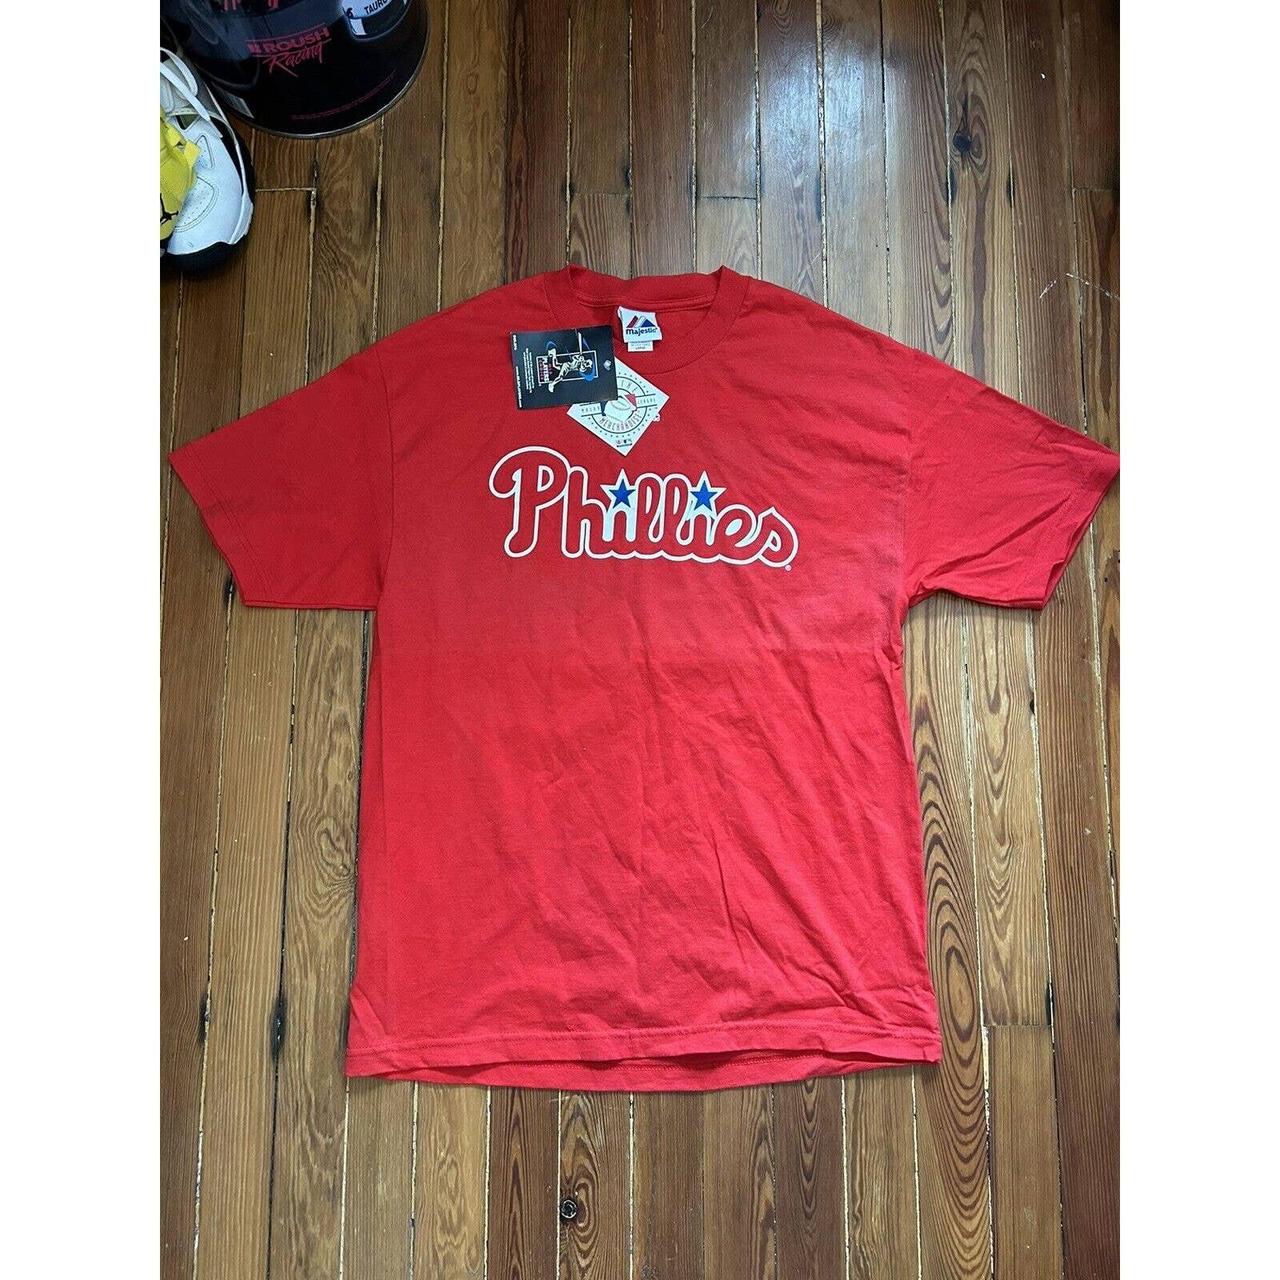 Philadelphia Phillies Cliff Lee T Shirt Size Large - Depop